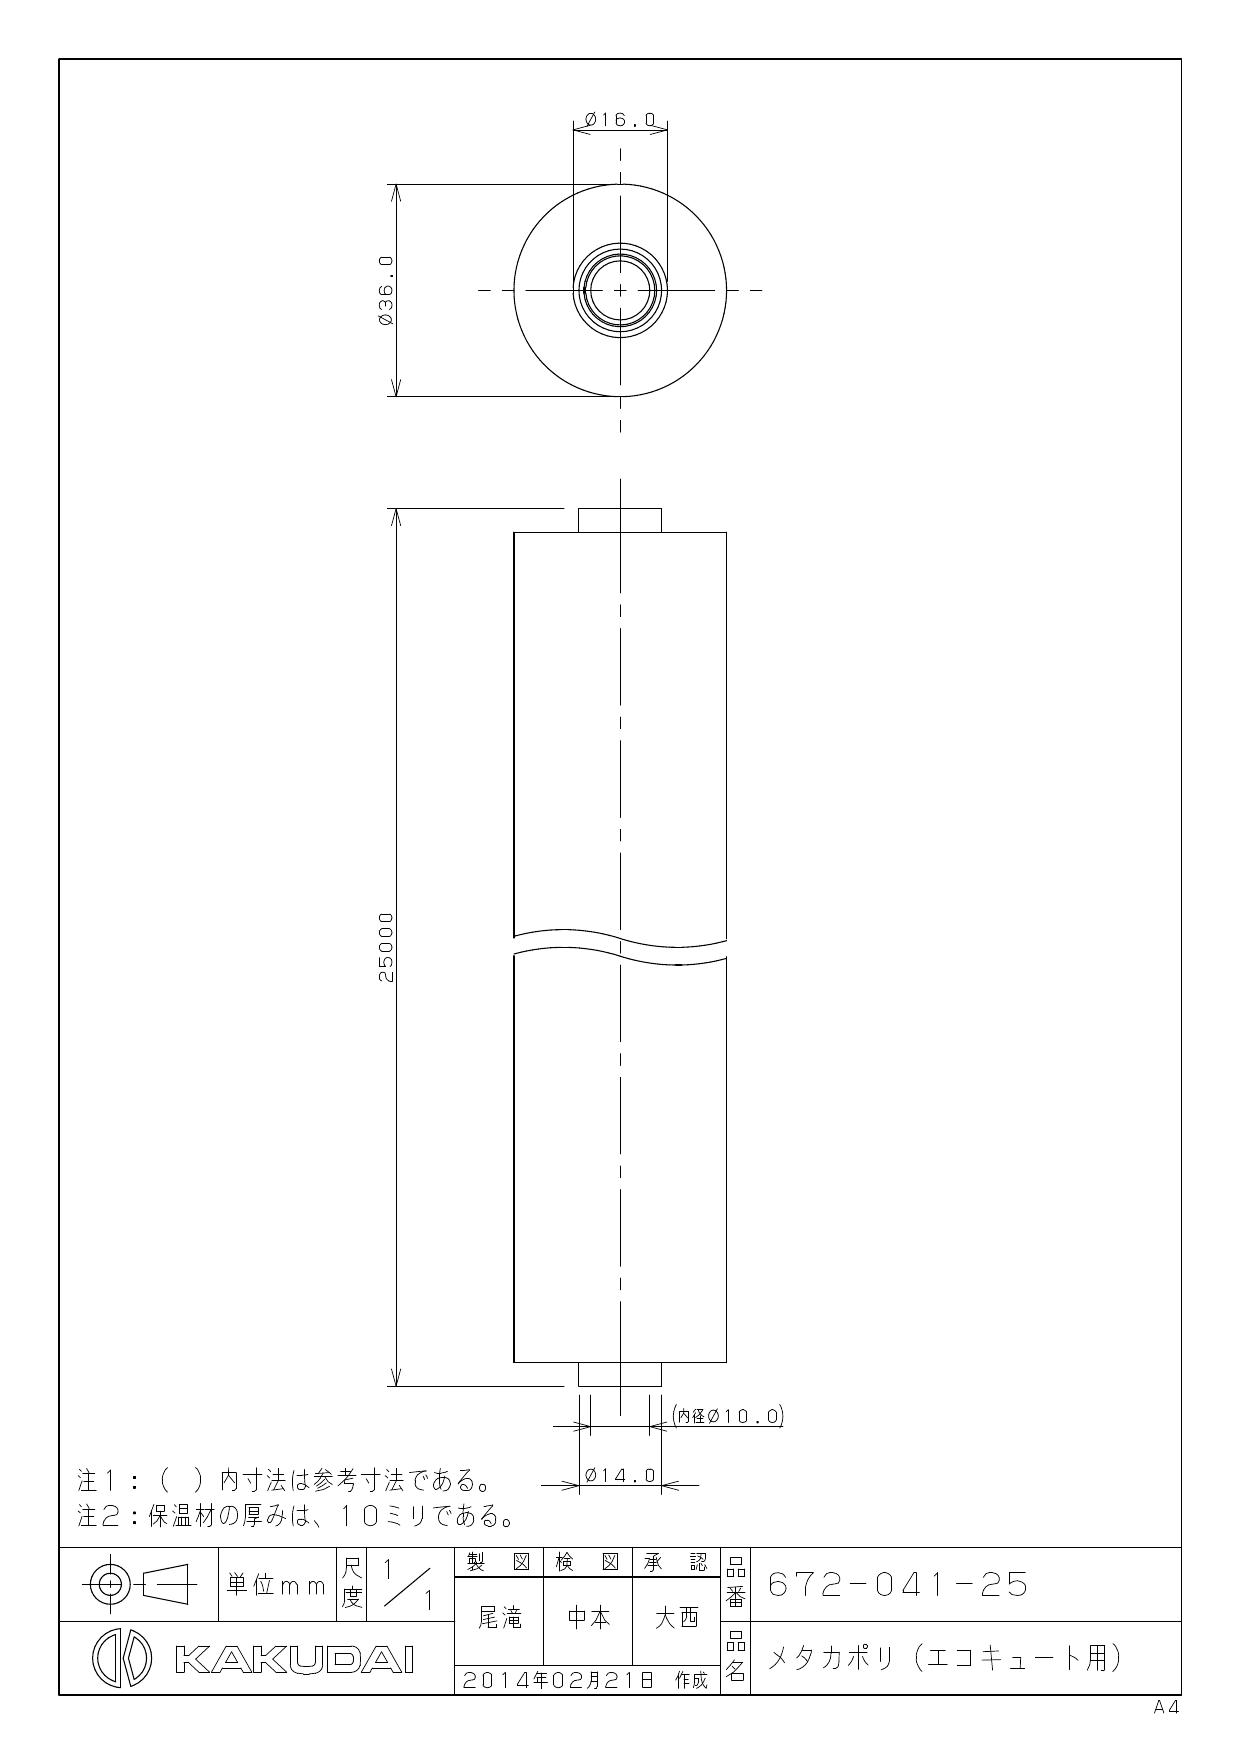 カクダイ(KAKUDAI) メタカポリエコキュートセット  10 672-043-2 - 1